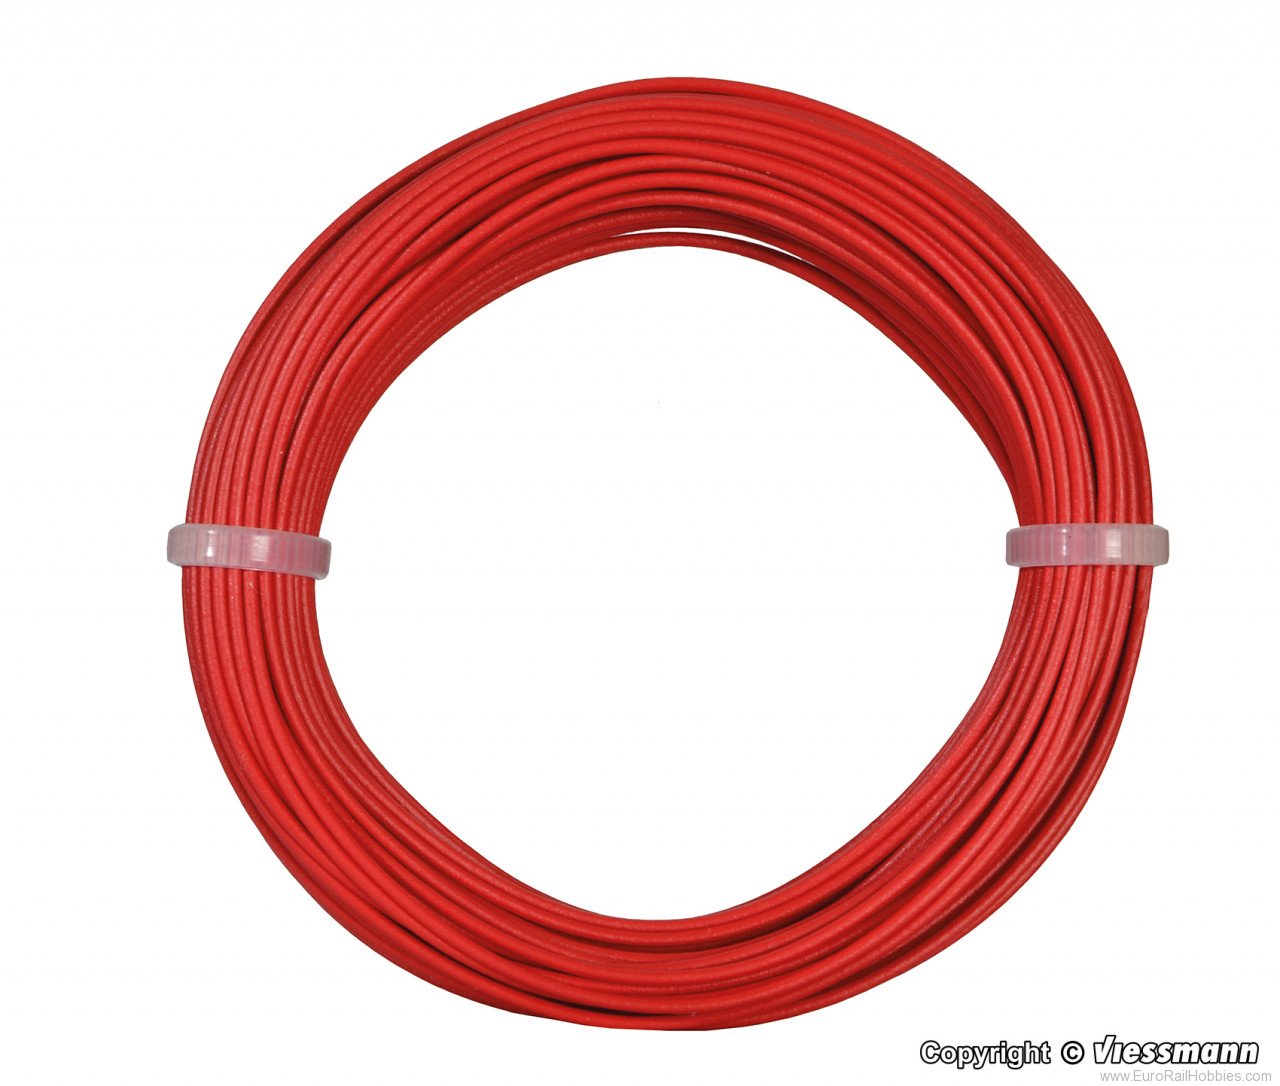 Viessmann 6863 Wire,0,14 mm dia., red, 10 m